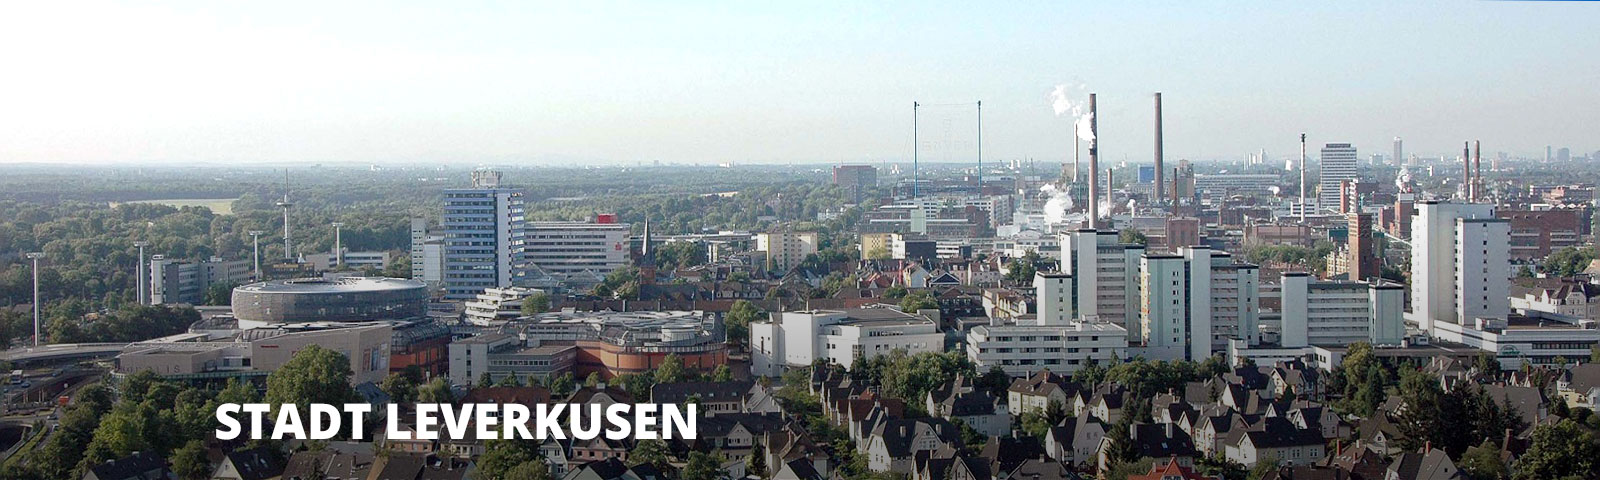 Stadt Leverkusen Panoramabild